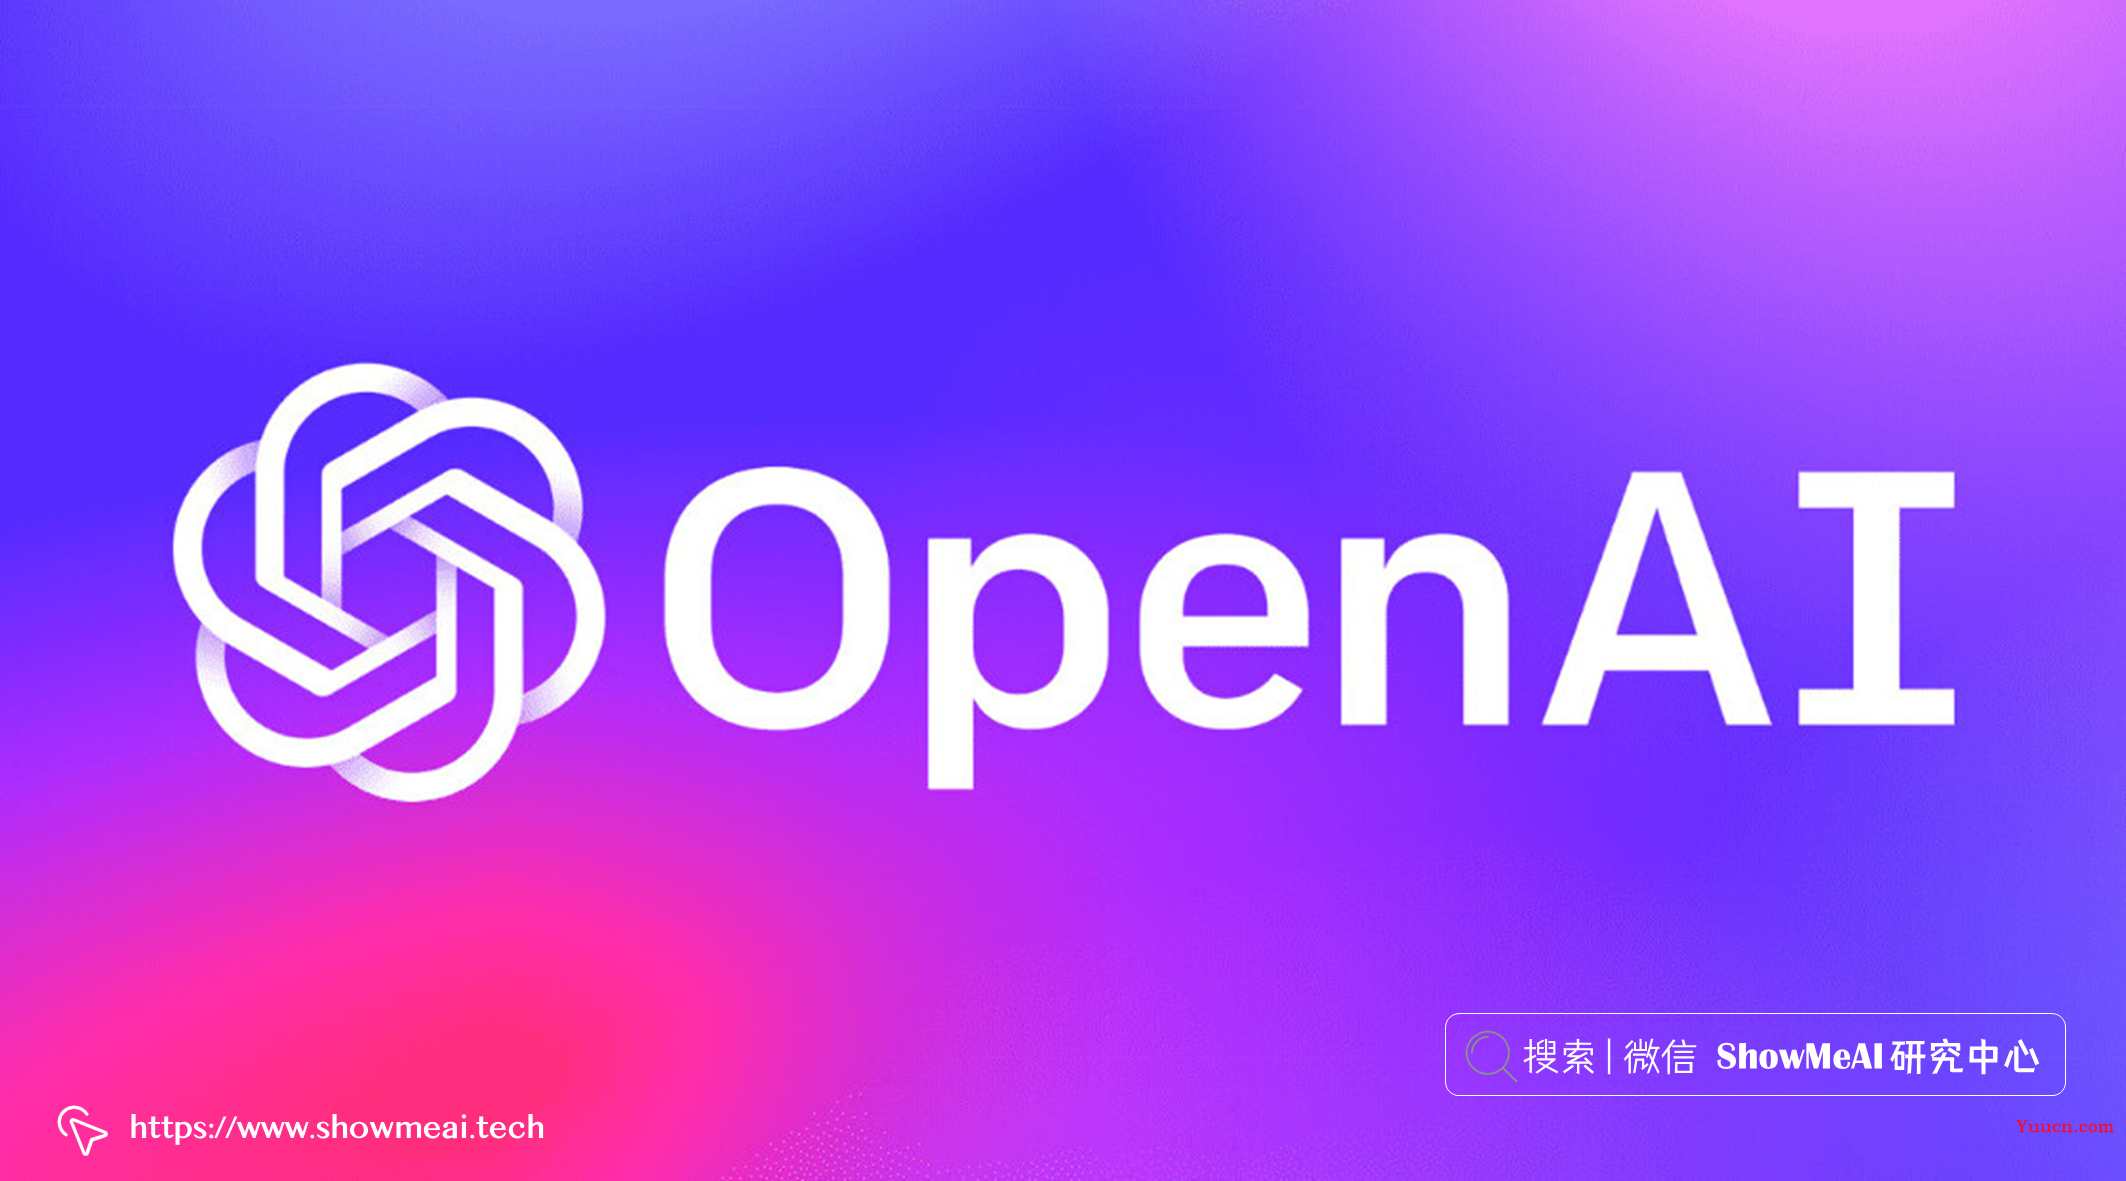 真实世界的人工智能应用落地——OpenAI篇 ⛵